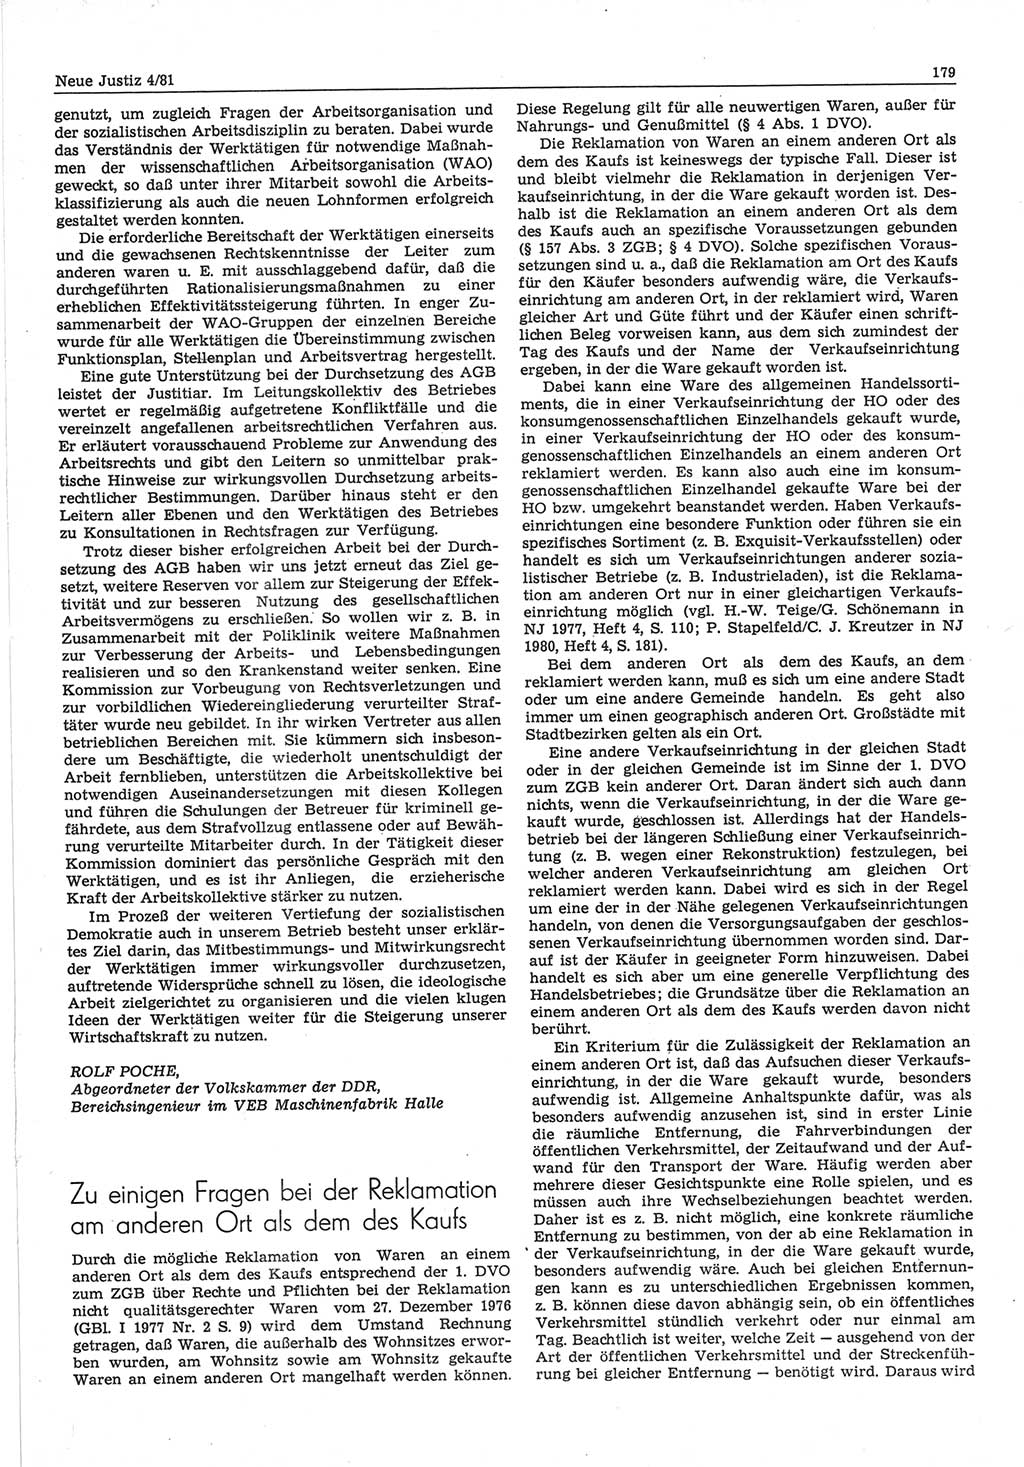 Neue Justiz (NJ), Zeitschrift für sozialistisches Recht und Gesetzlichkeit [Deutsche Demokratische Republik (DDR)], 35. Jahrgang 1981, Seite 179 (NJ DDR 1981, S. 179)